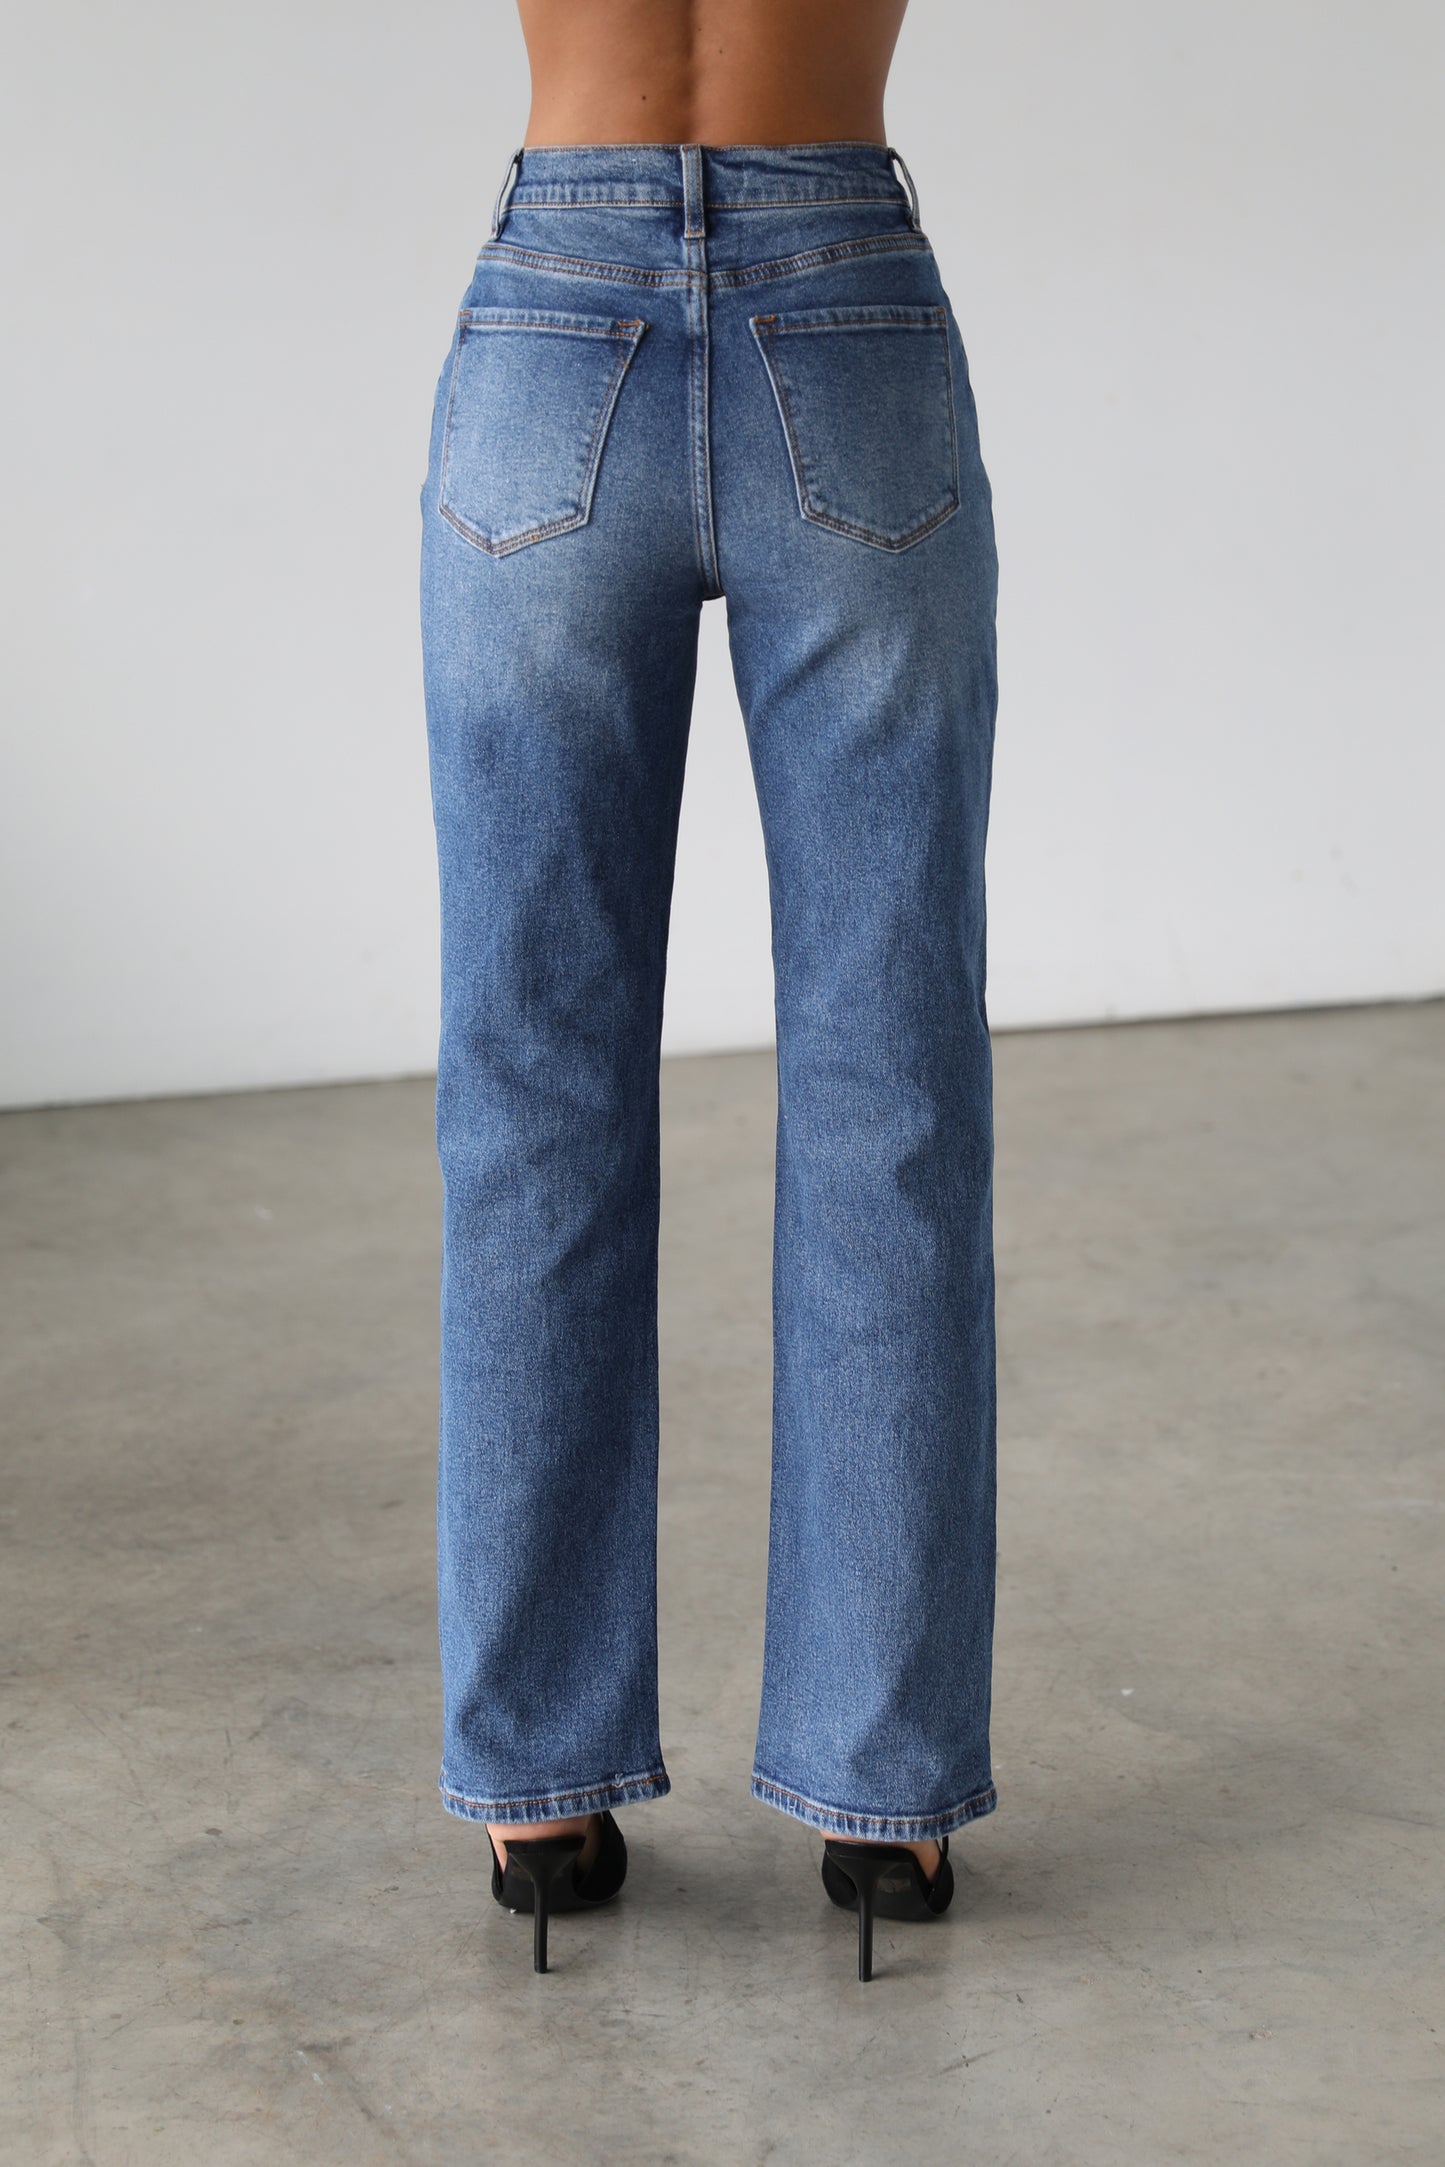 DOGMA DENIM - High Rise Straight Leg Denim Jeans - Dark- 7106